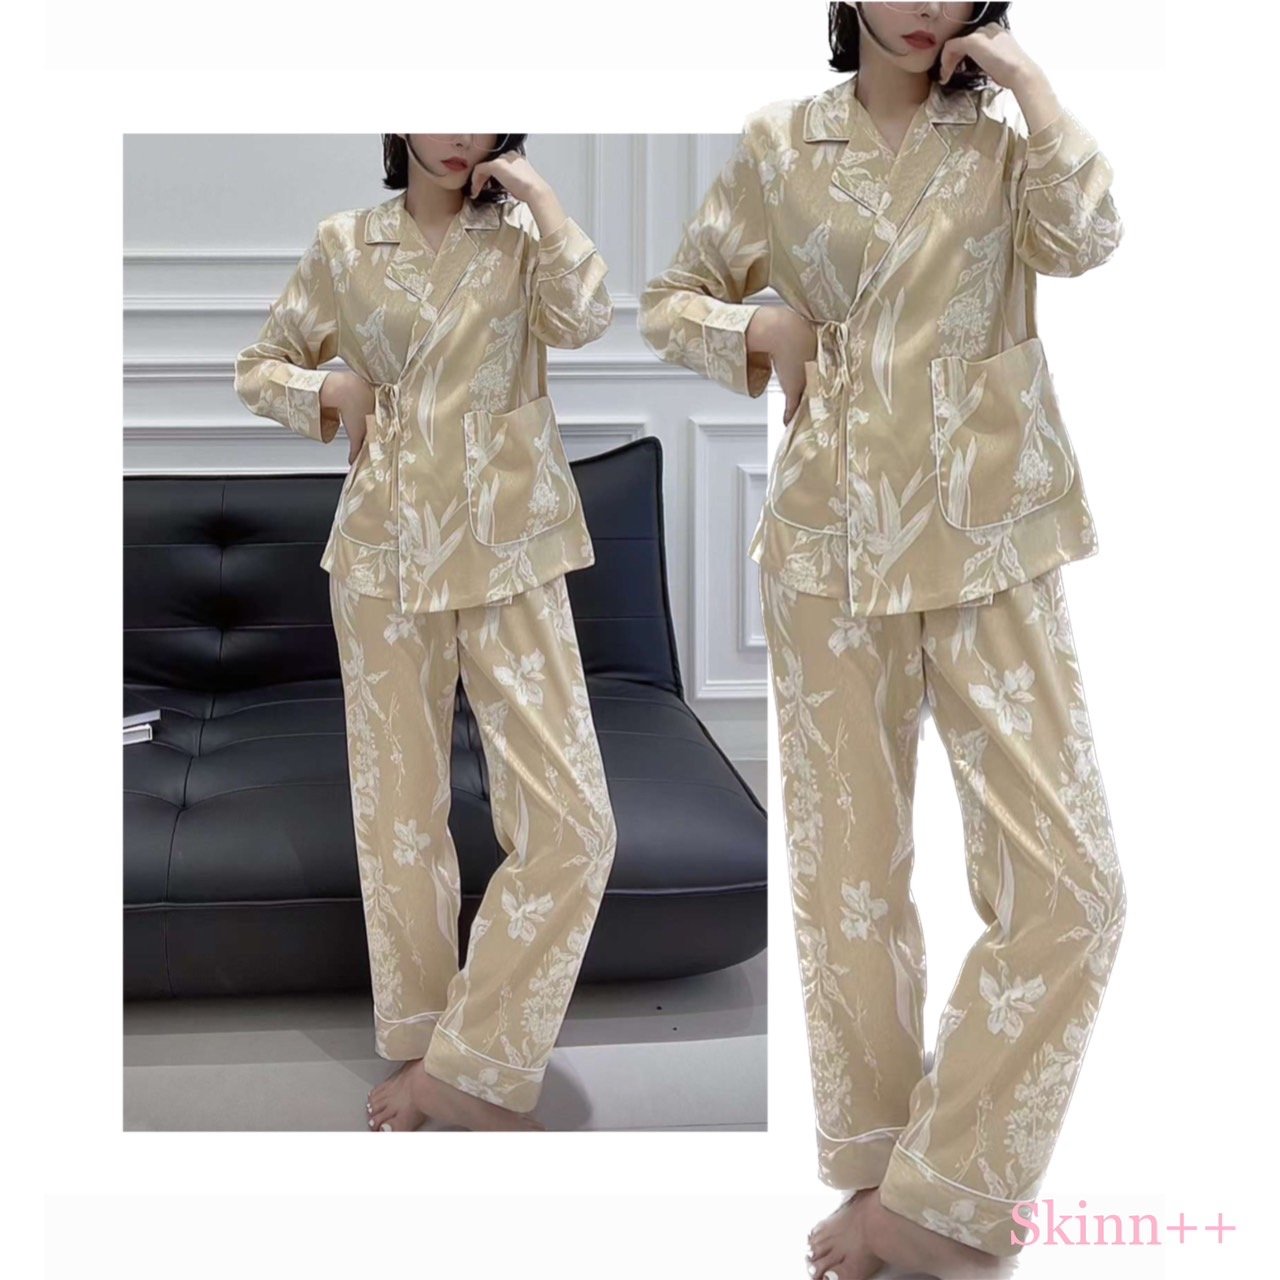 Silky Soft Kimono Pajamas by Skinn intimate